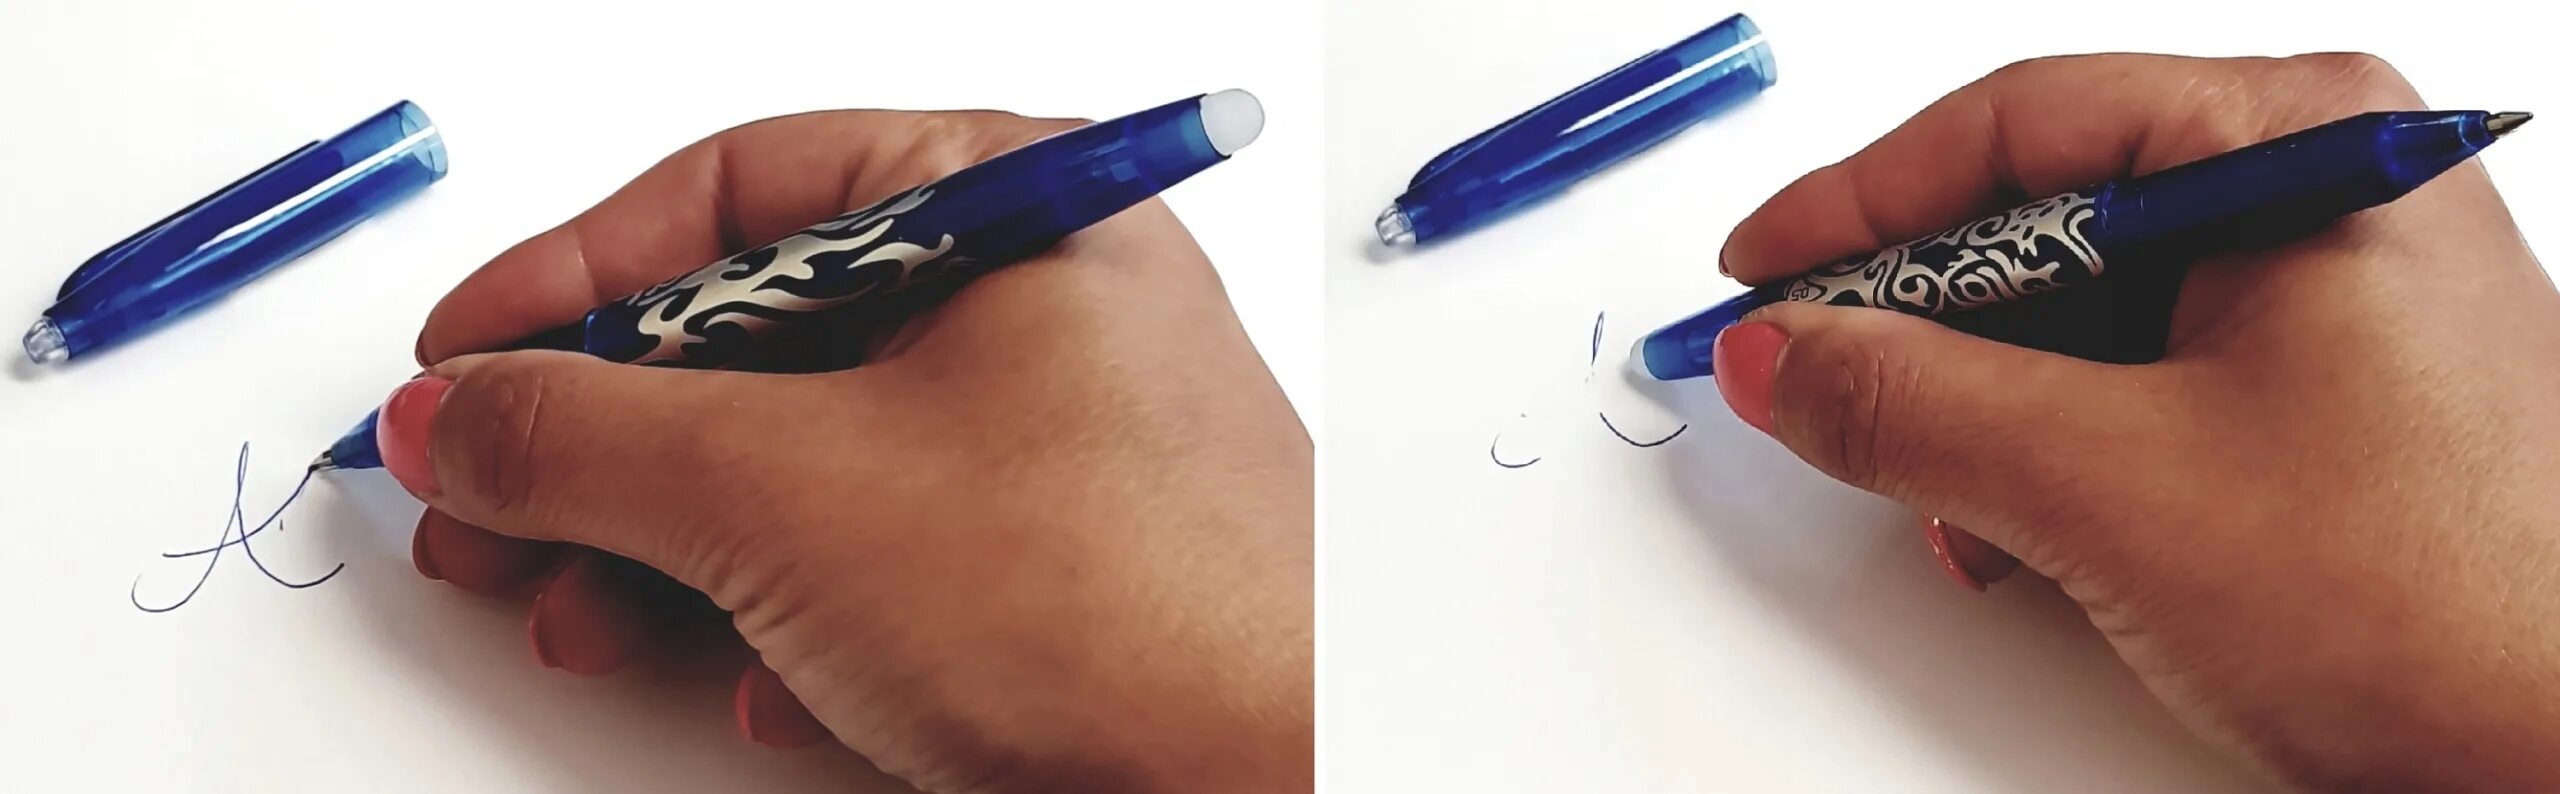 Ручка стирающаяся ластиком. Ручка с резинкой для стирания. Ручки со стирательной резинкой. Ручка с ластиком шариковая ручка. Что делать есть ручка не пишет